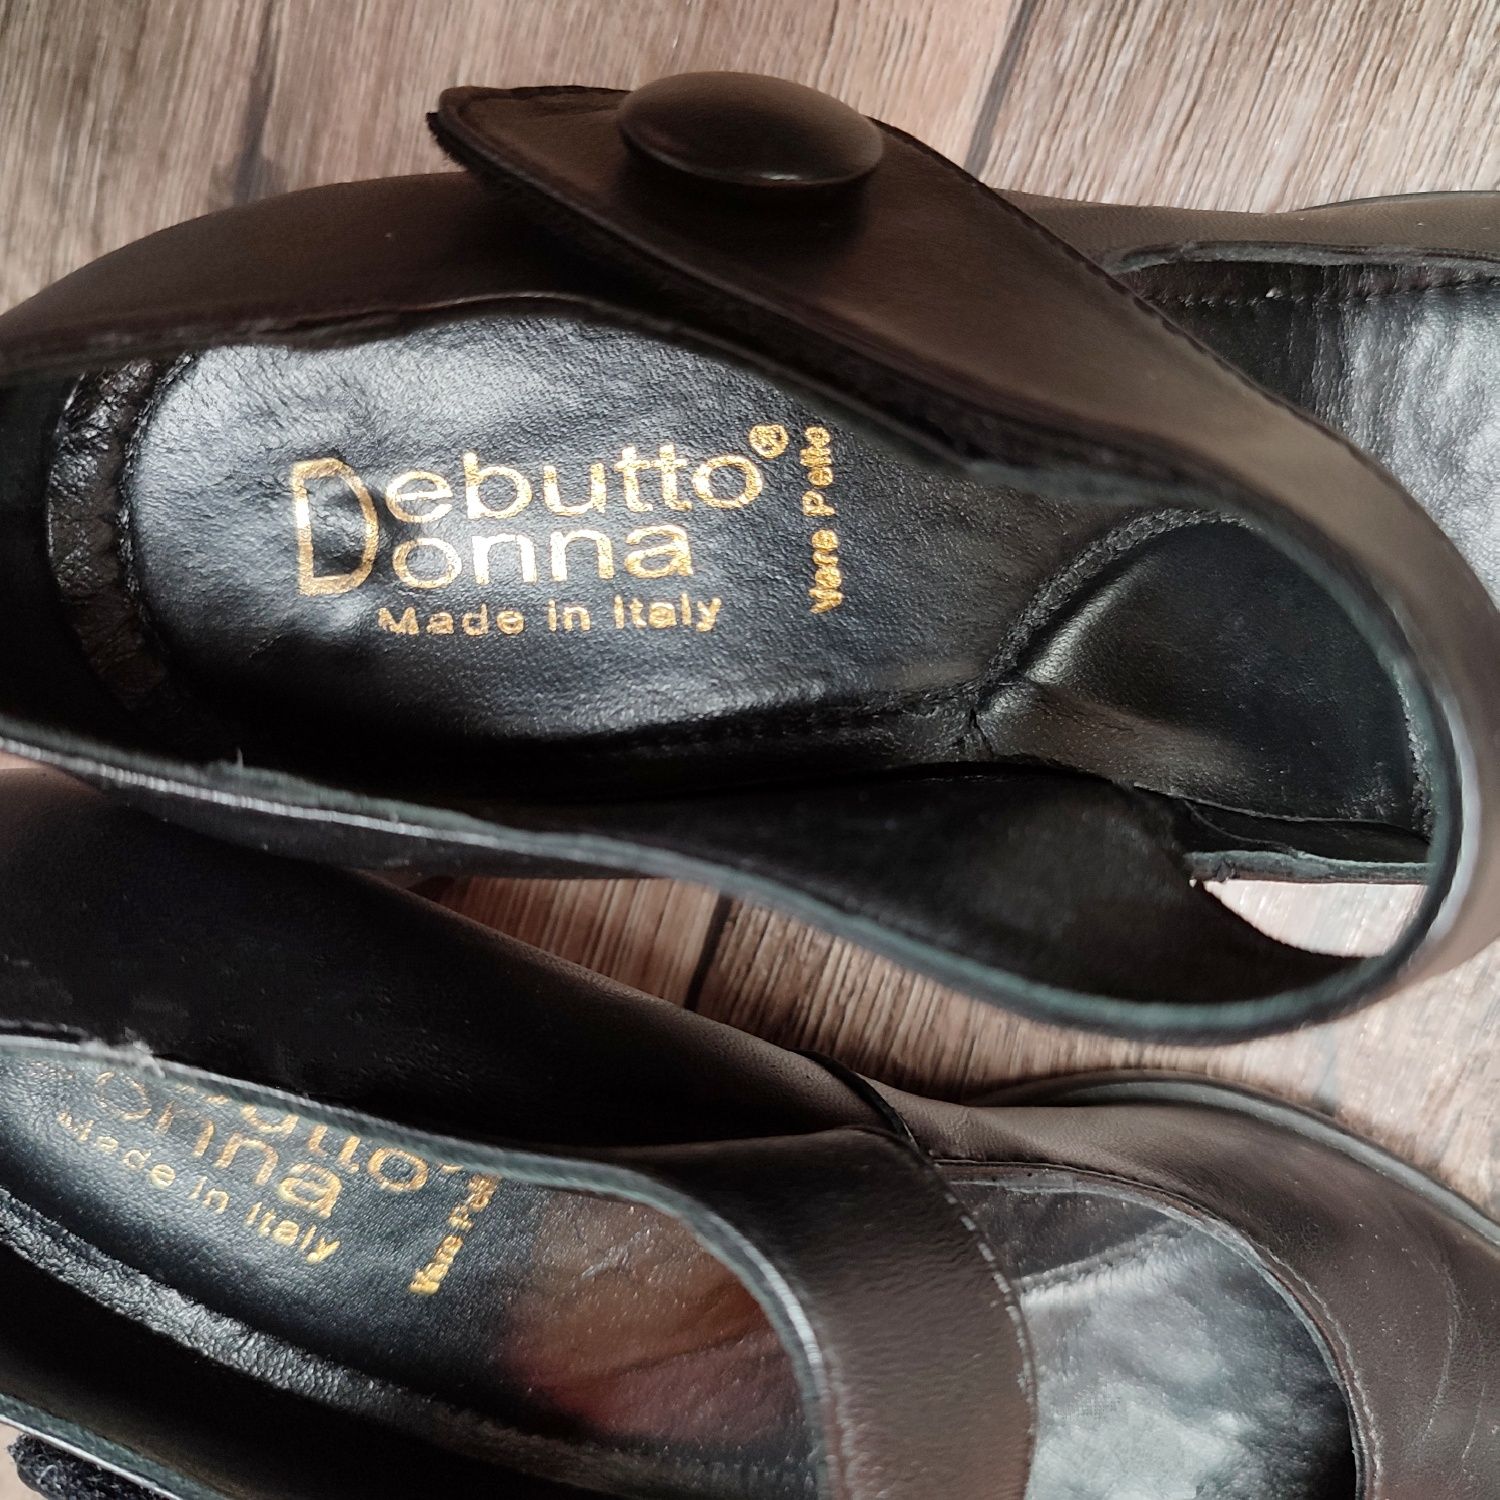 Італія шкіра туфлі Debuto donna ортопедичні майже нові 38 розмір